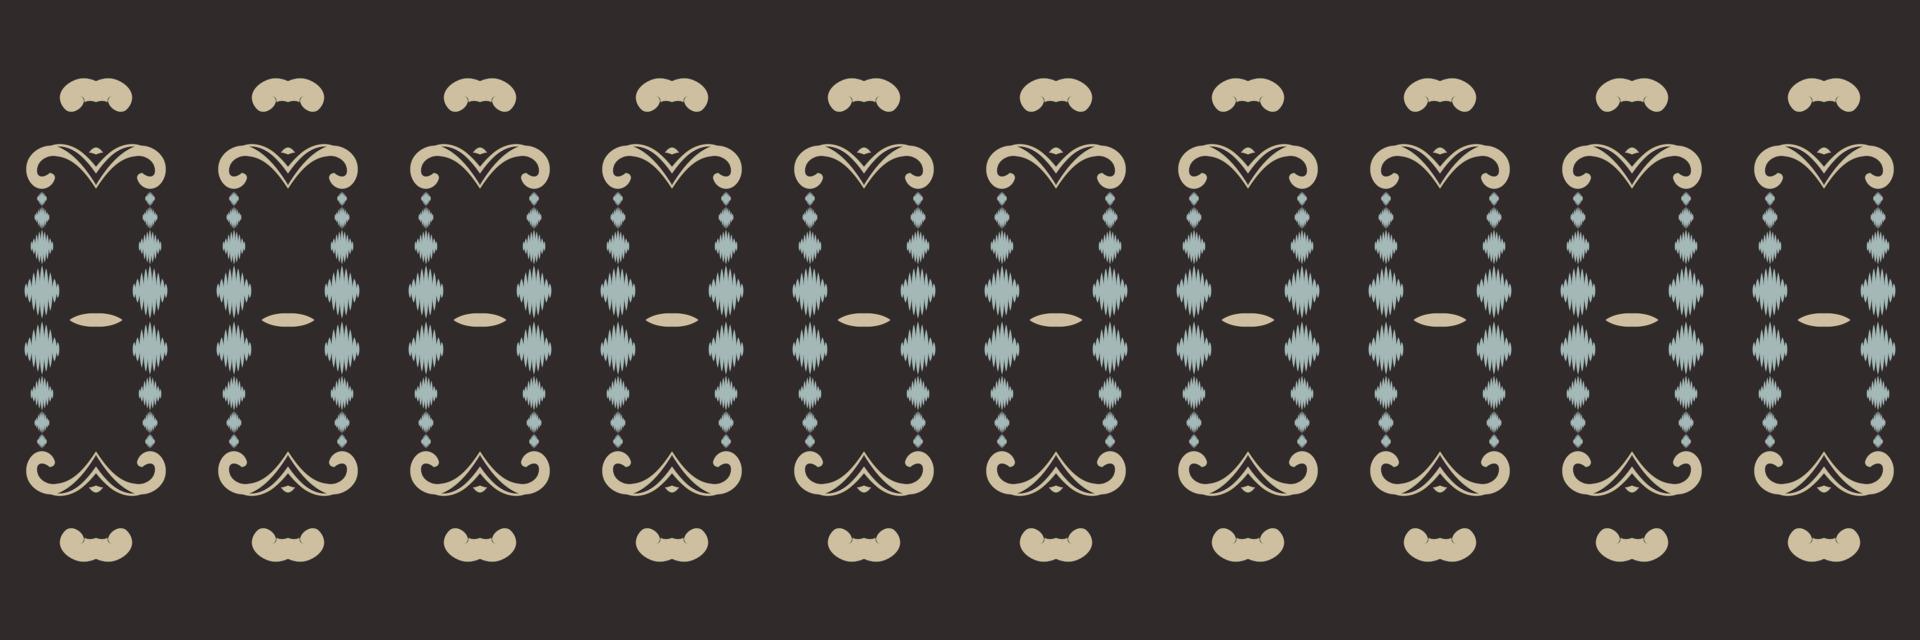 modèle sans couture de chevron tribal points ikat. ethnique géométrique ikkat batik numérique vecteur conception textile pour impressions tissu sari mughal brosse symbole andains texture kurti kurtis kurtas